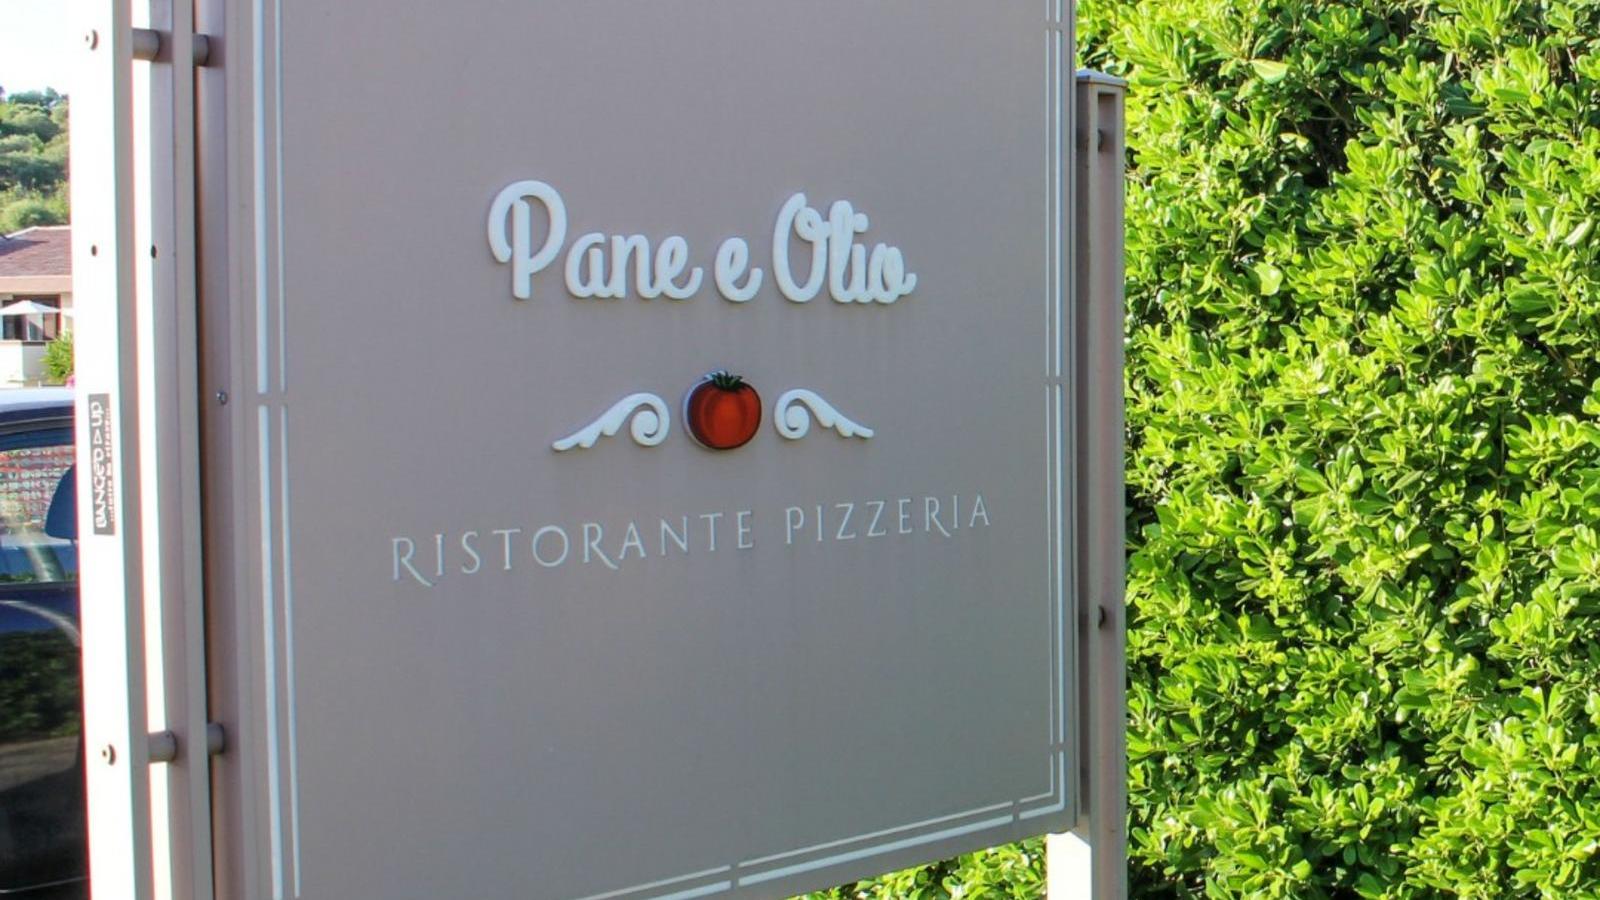  - PANE E OLIO - Ristorante Pizzeria | Localtourism.it